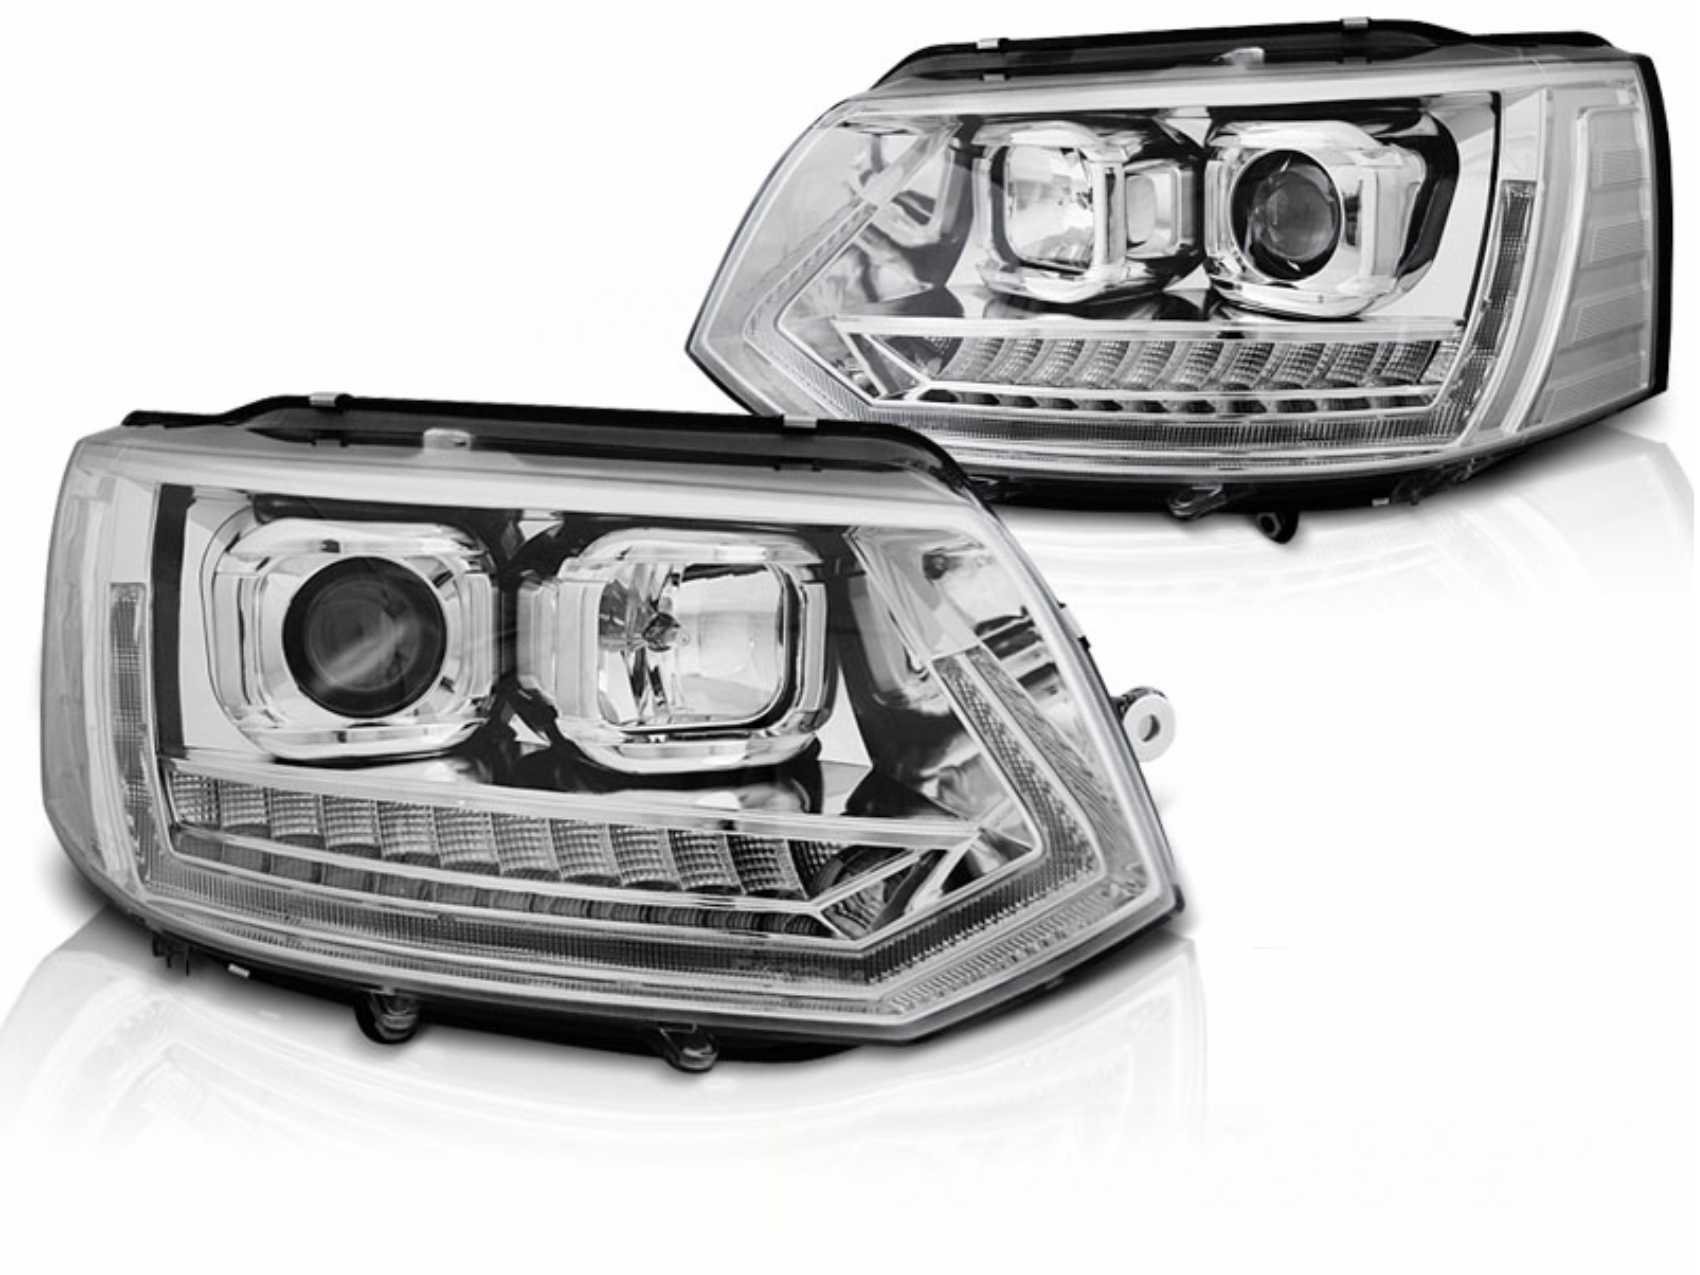 LED DRL csöves fényszórók VW Transporter T5.1 (2010-2015) modellhez, dinamikus irányjelzőkkel, króm